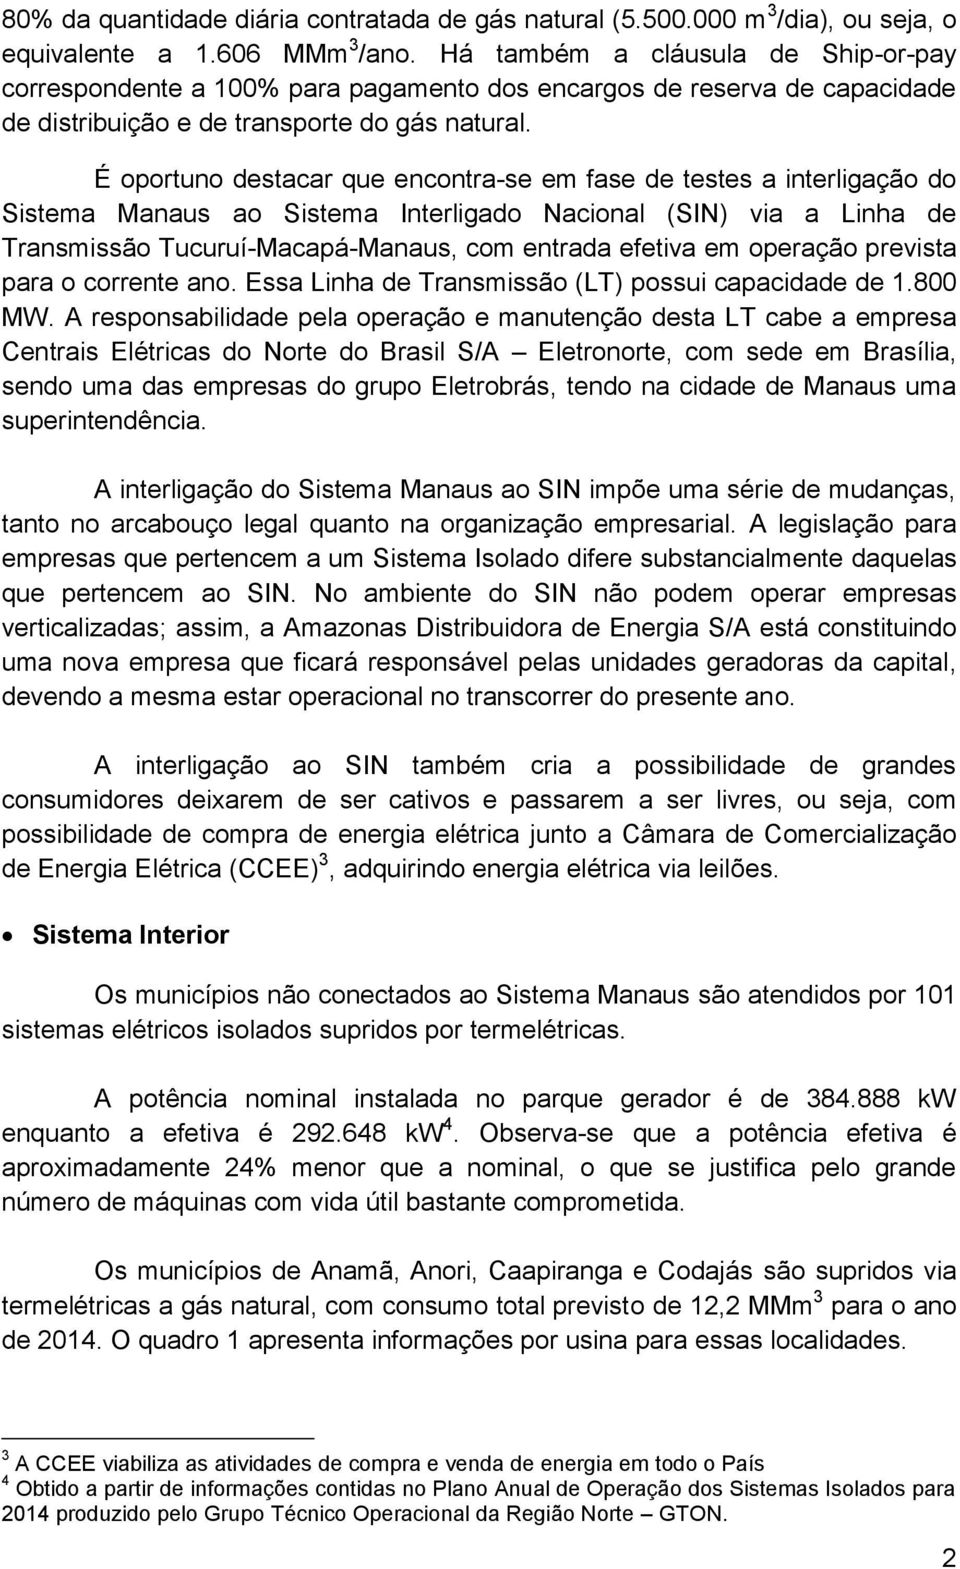 É oportuno destacar que encontra-se em fase de testes a interligação do Sistema Manaus ao Sistema Interligado Nacional (SIN) via a Linha de Transmissão Tucuruí-Macapá-Manaus, com entrada efetiva em